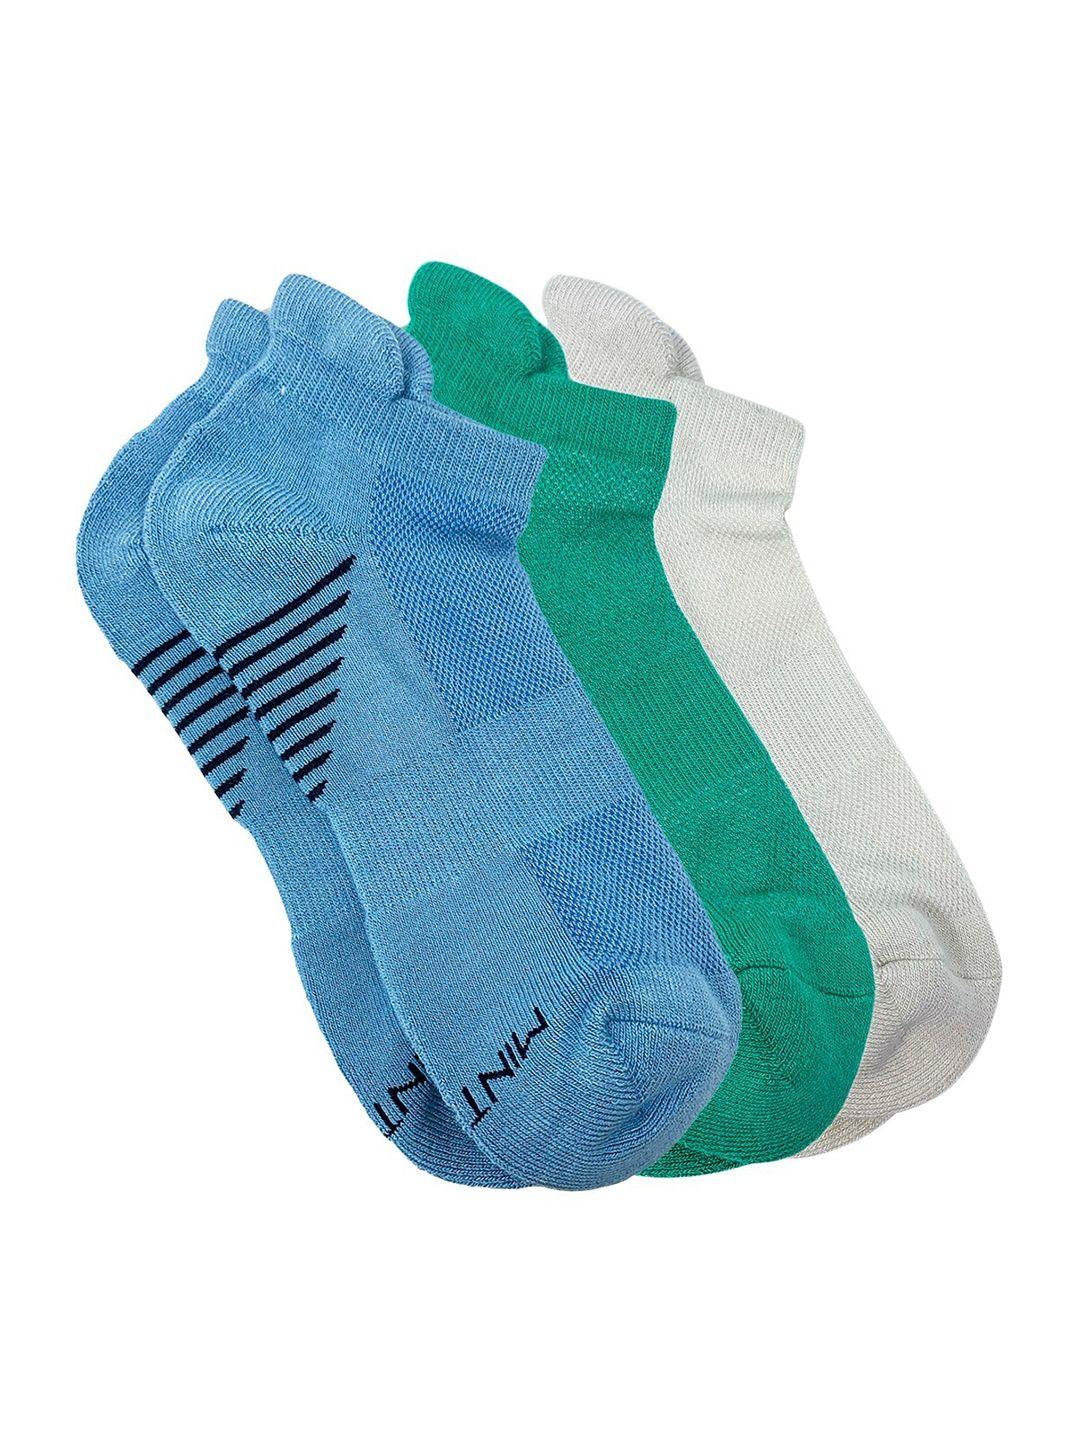 mint-&-oak-men-pack-of-3-lets-take-a-run-ankle-length-sports-socks